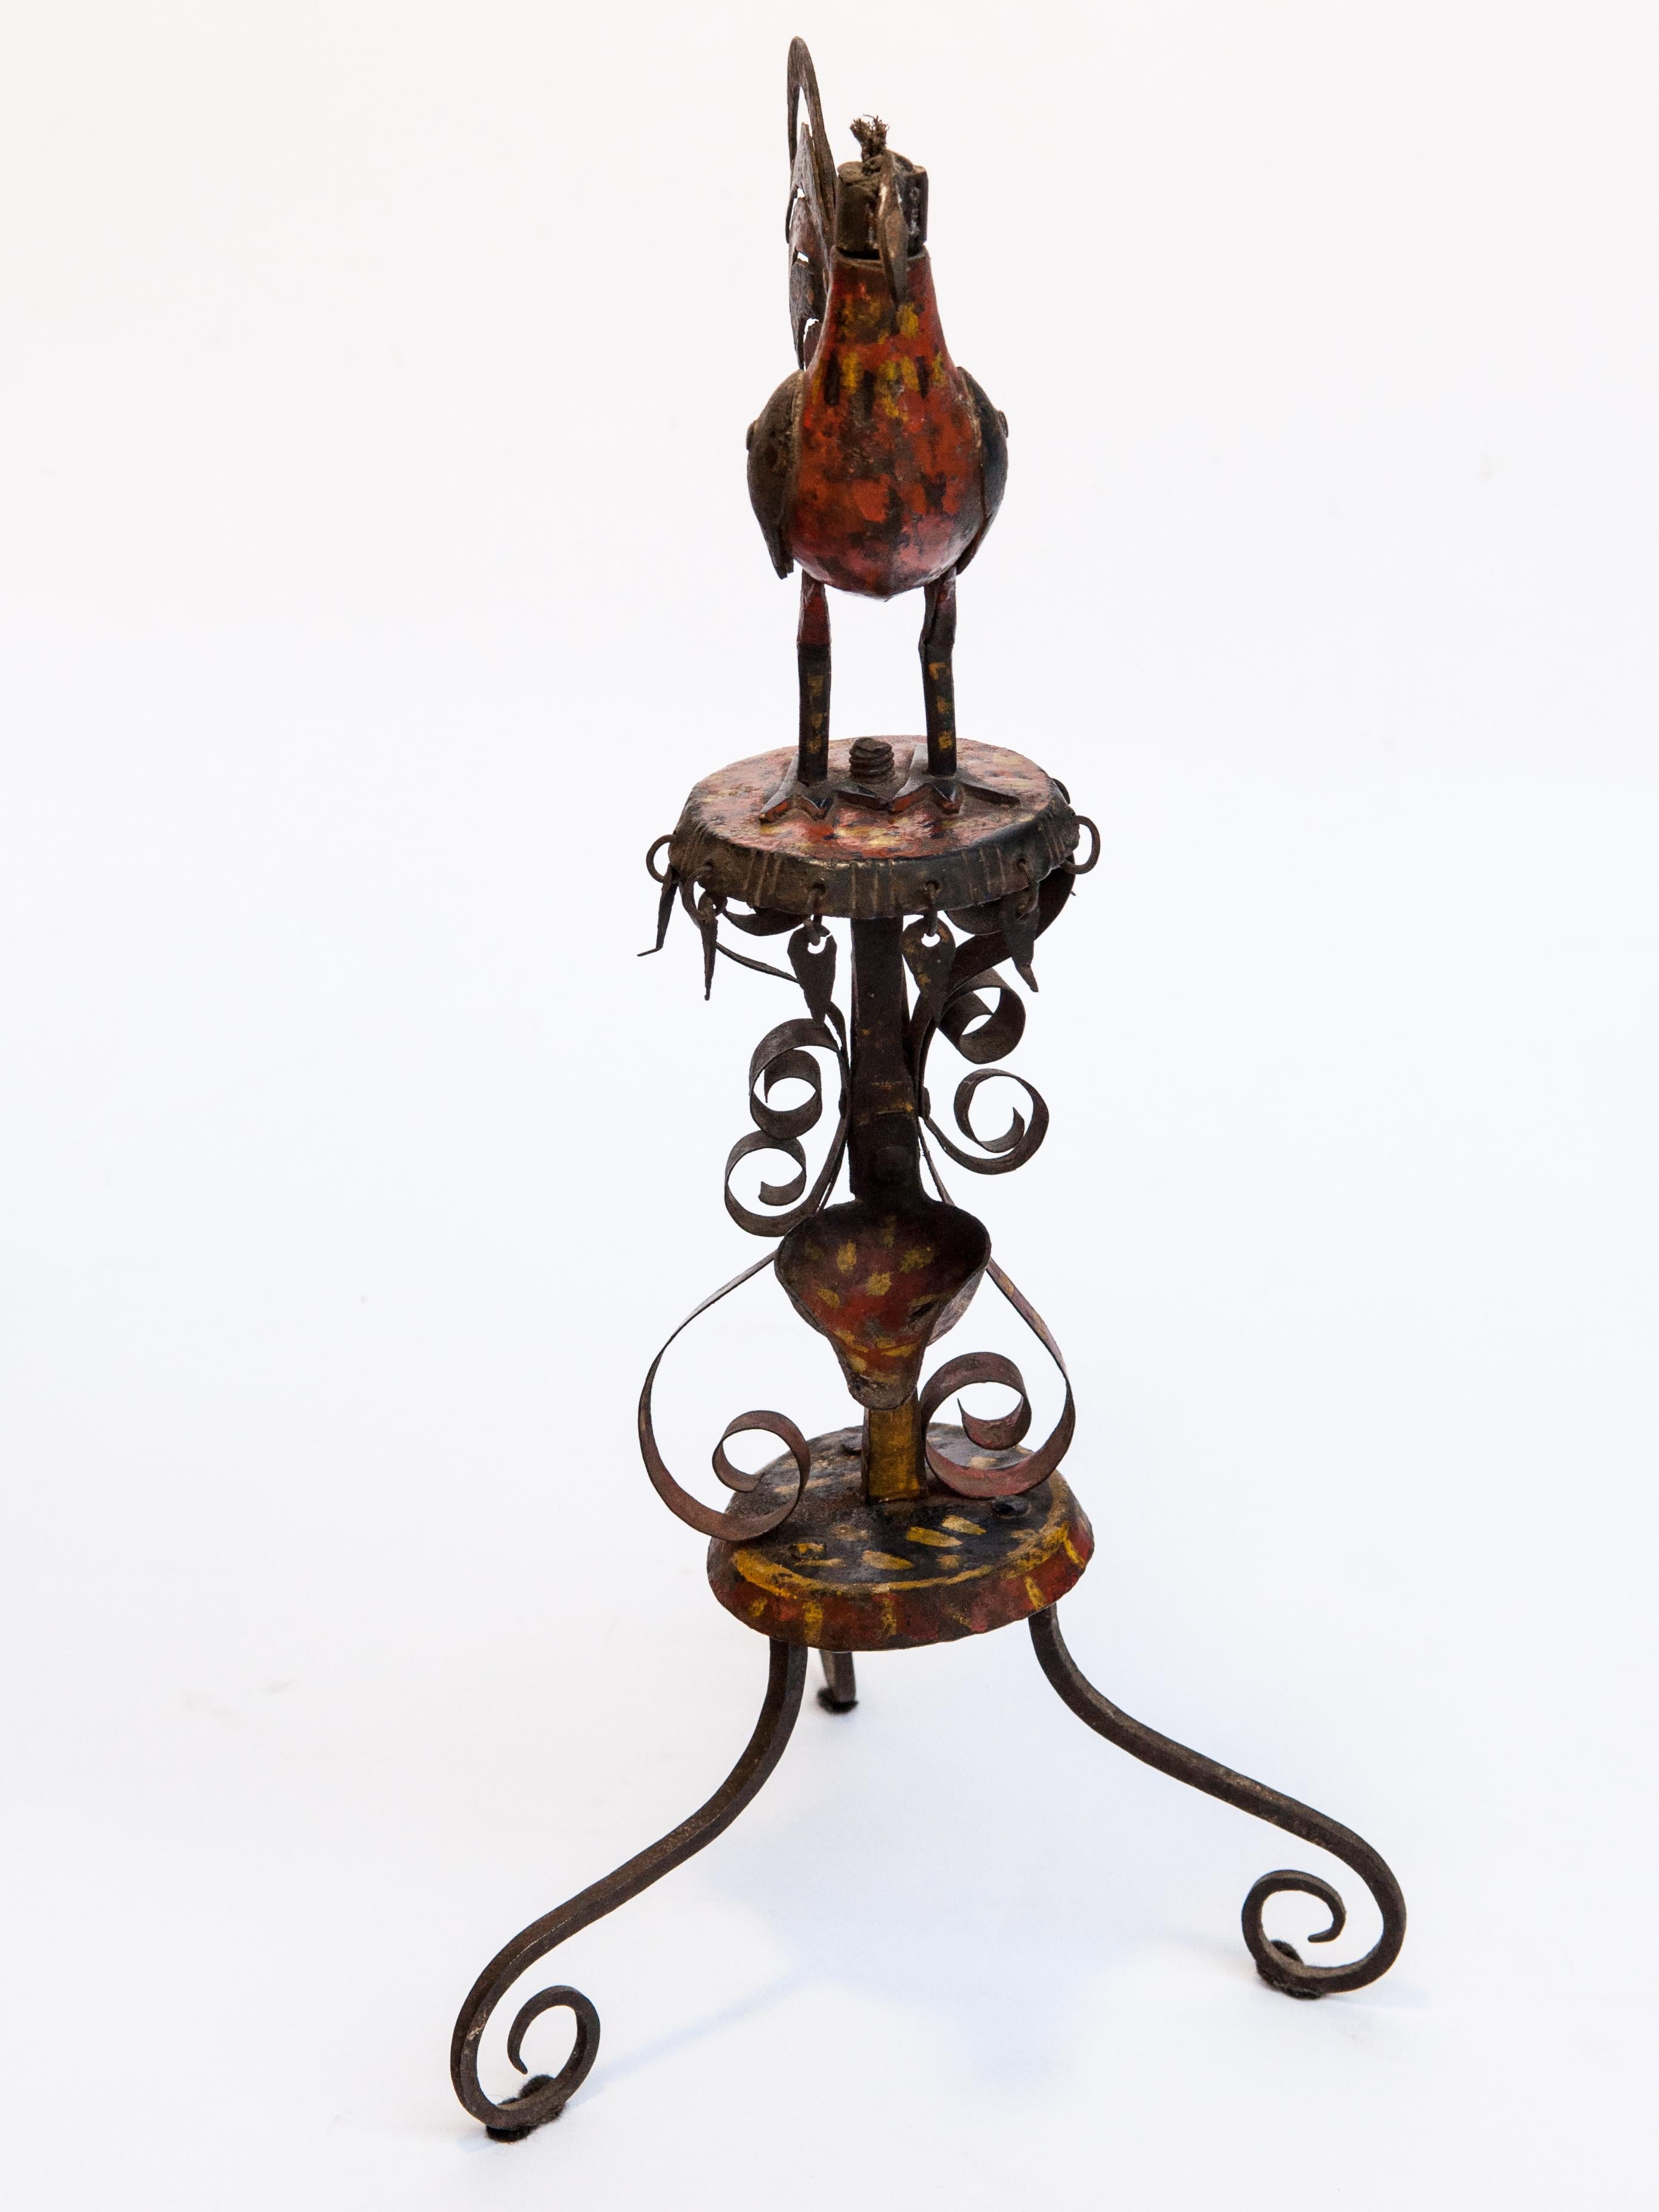 Nepalese Vintage Metal Oil Lamp Rooster Motif Original Color Rural Nepal Mid-20th Century